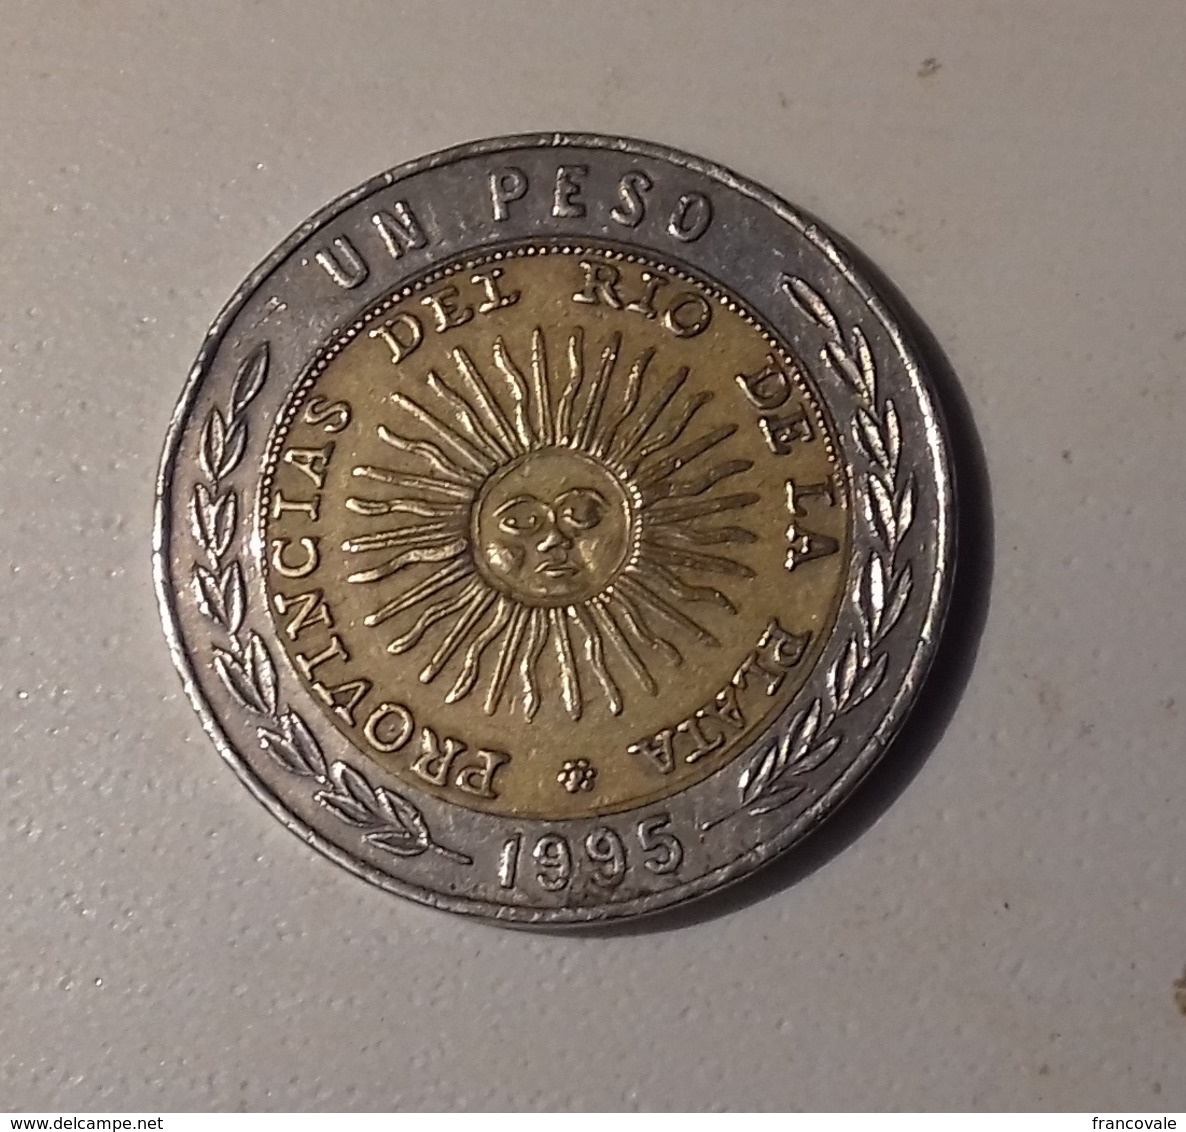 Argentina 1995 1 Peso Bimetallica - Argentina